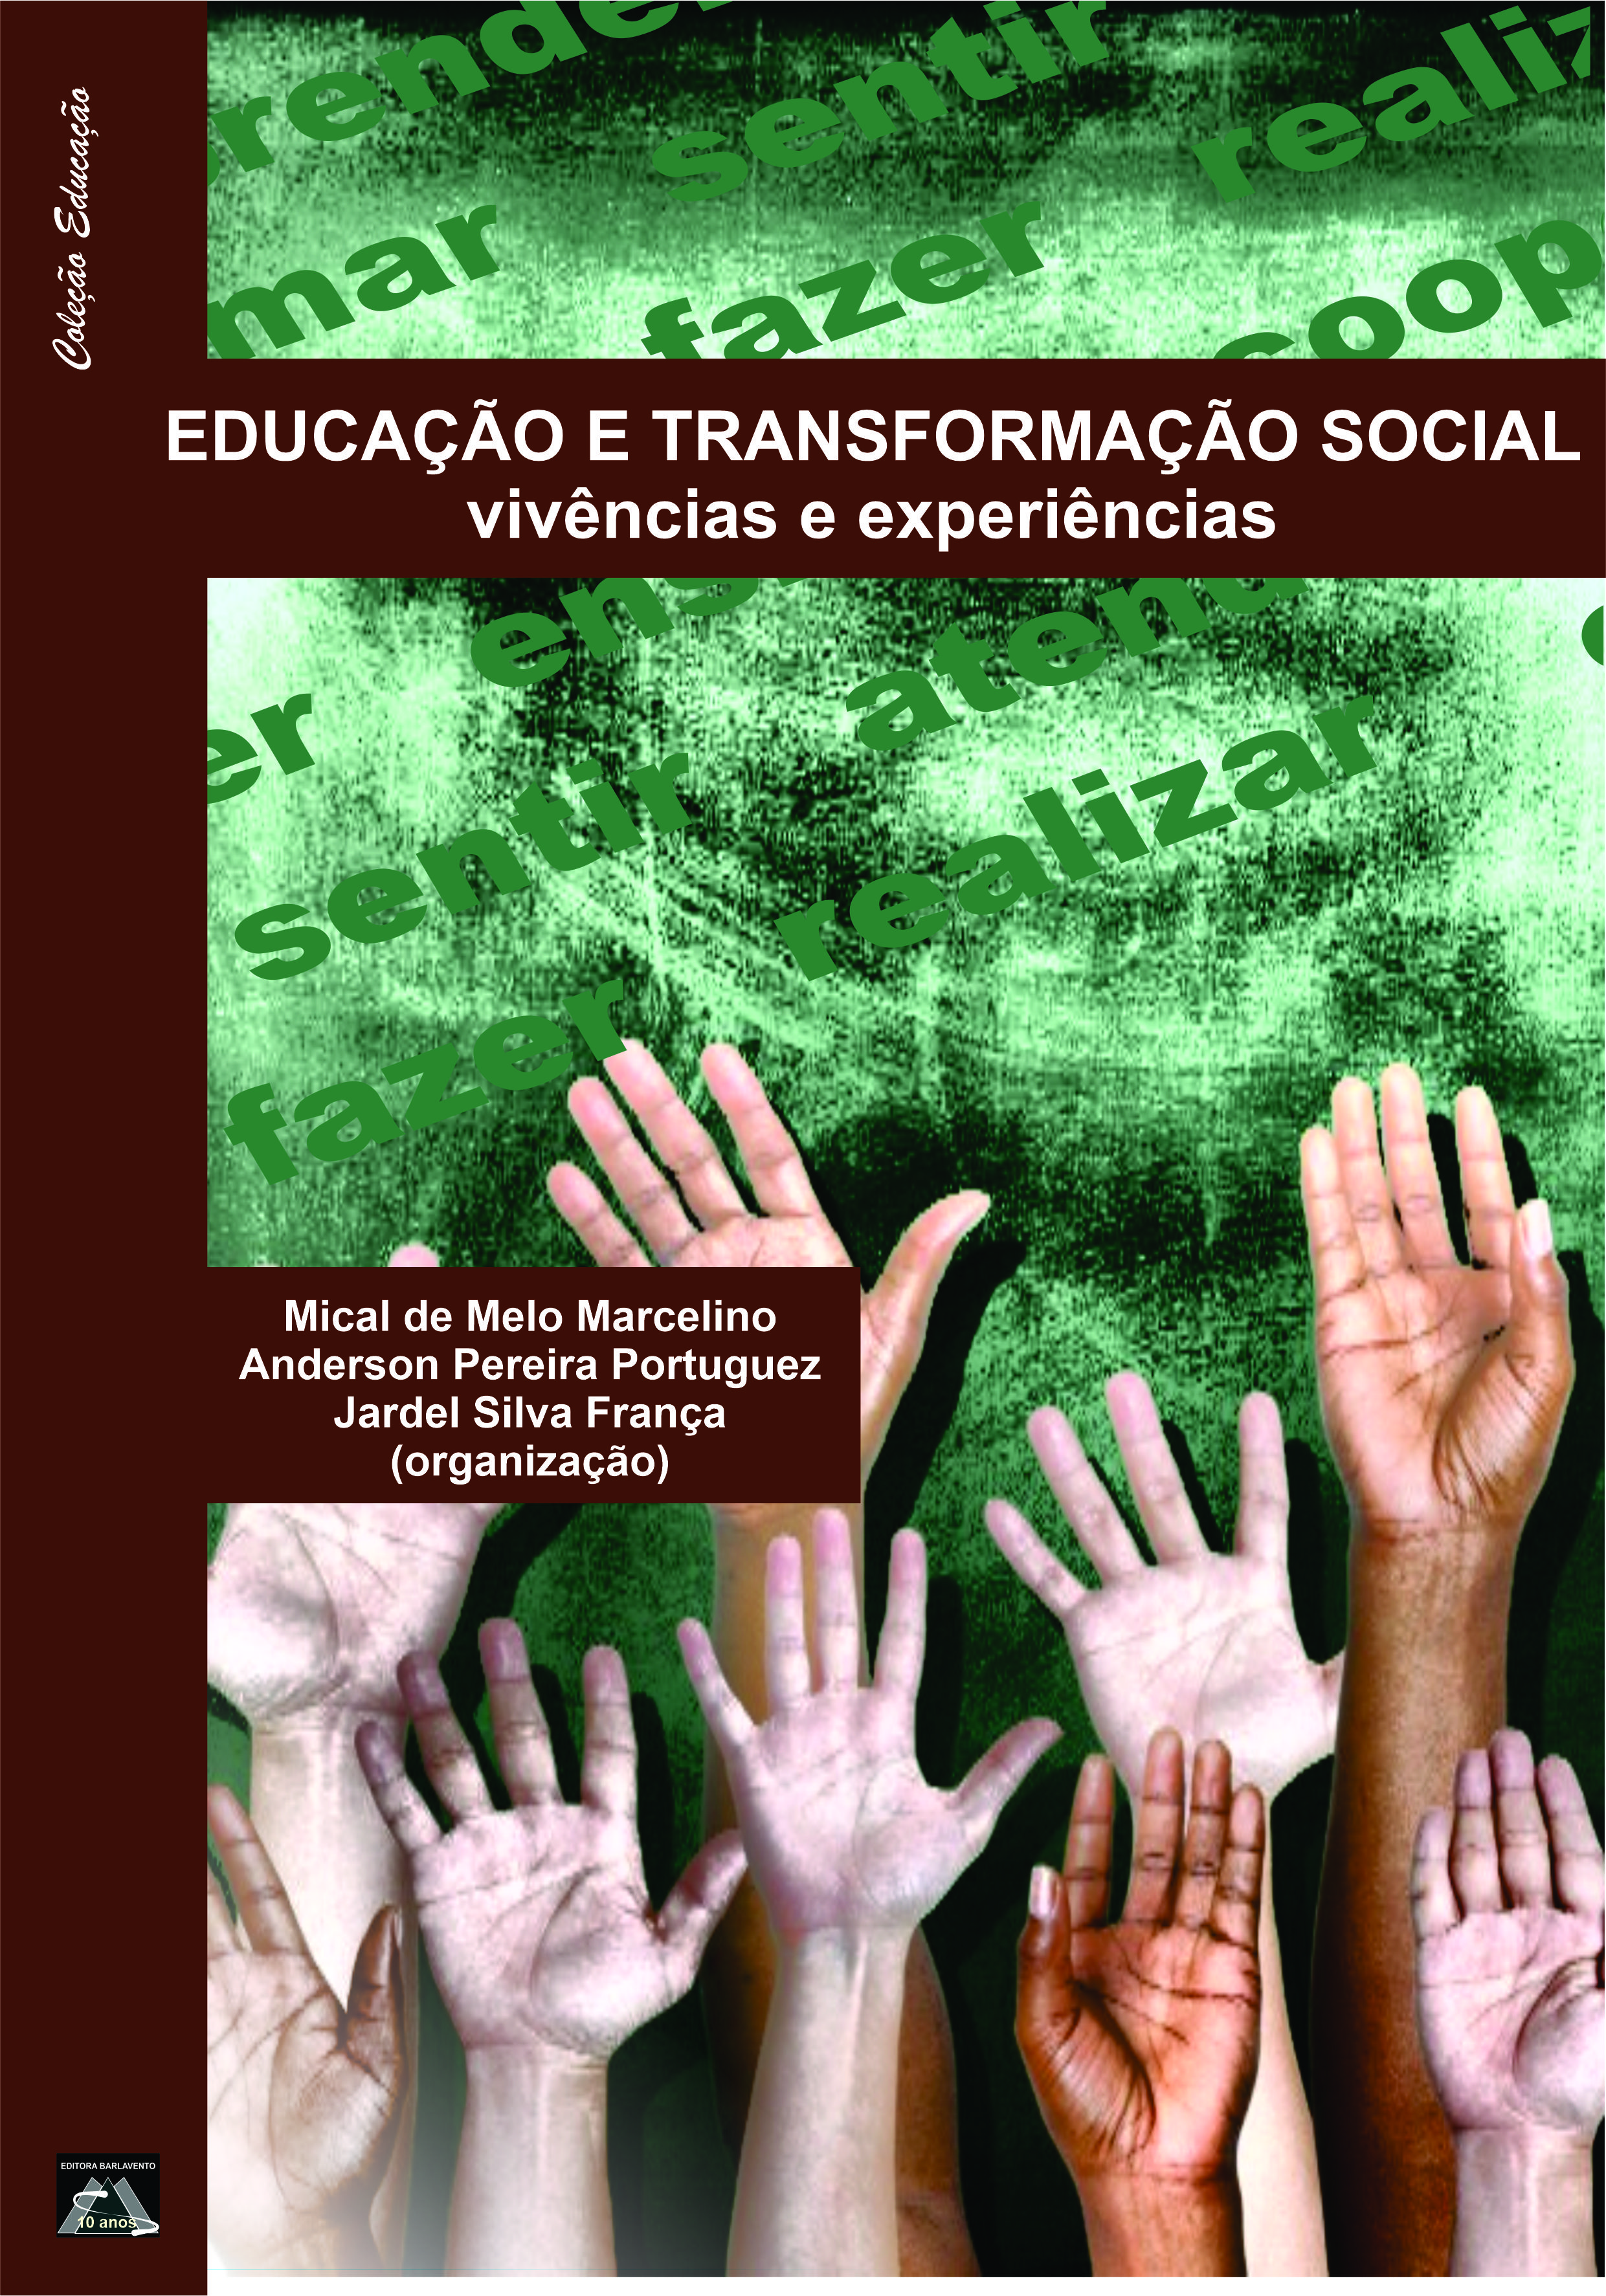 Jogos educativos para transformação social